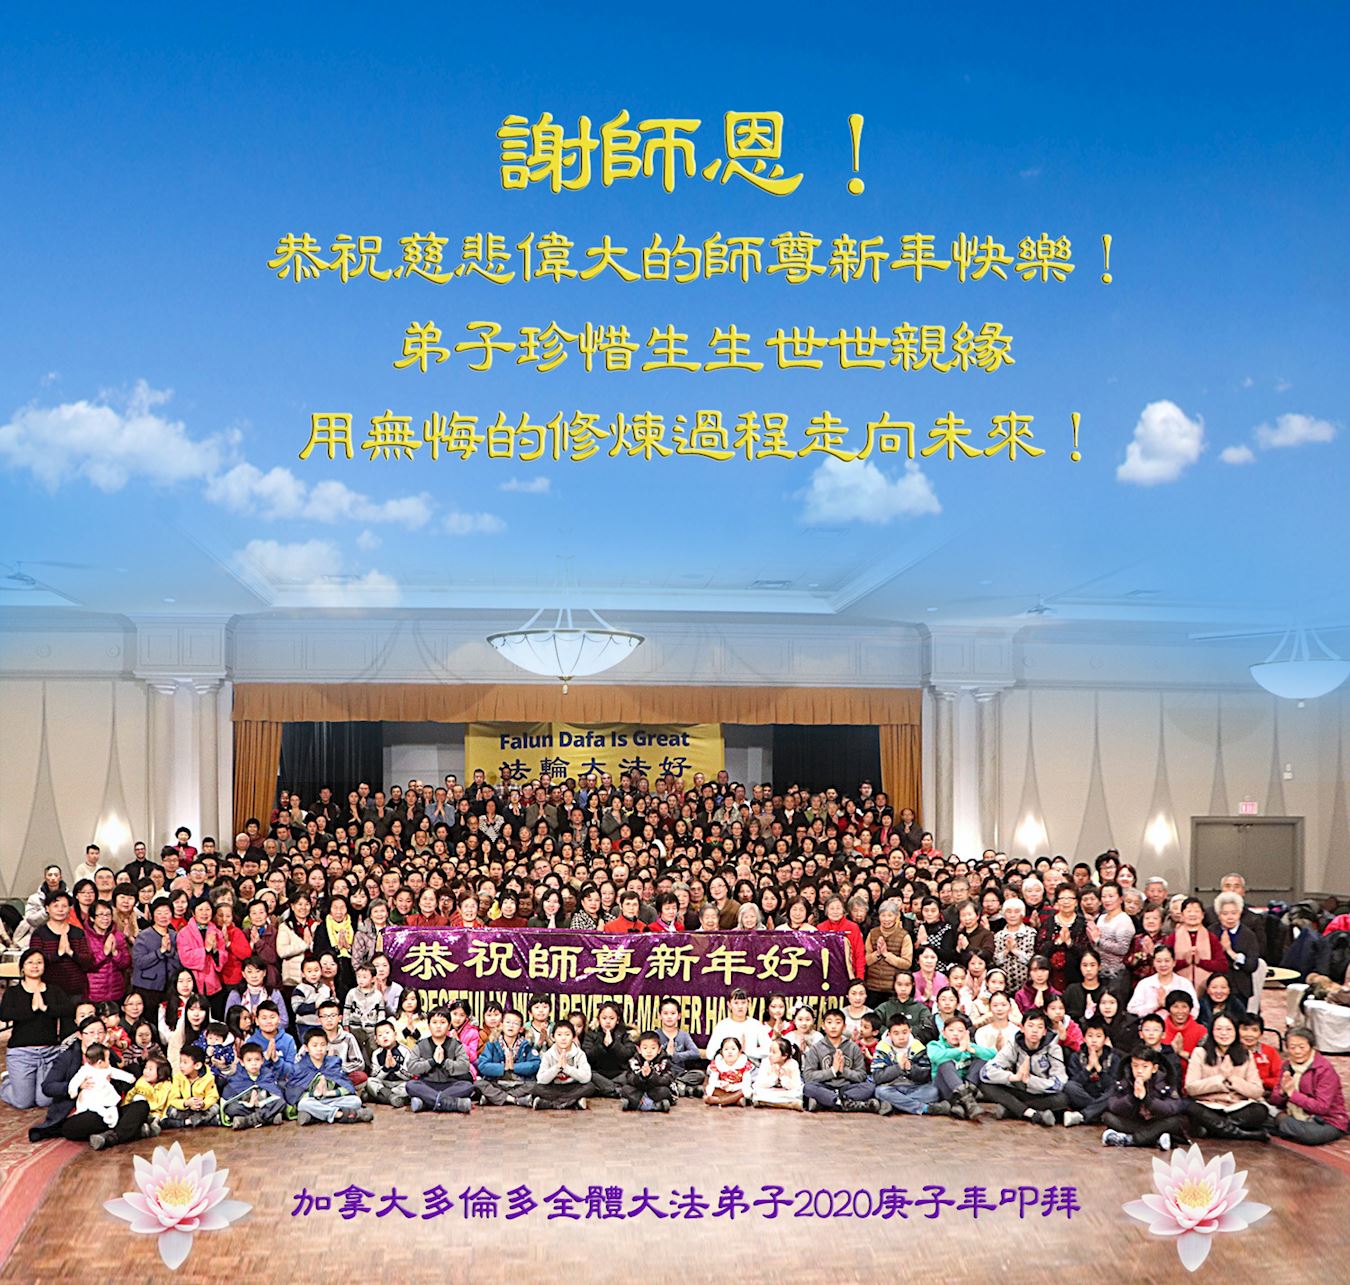 Image for article Les pratiquants de Toronto expriment leur gratitude envers le « Zhuan Falun » et Maître Li